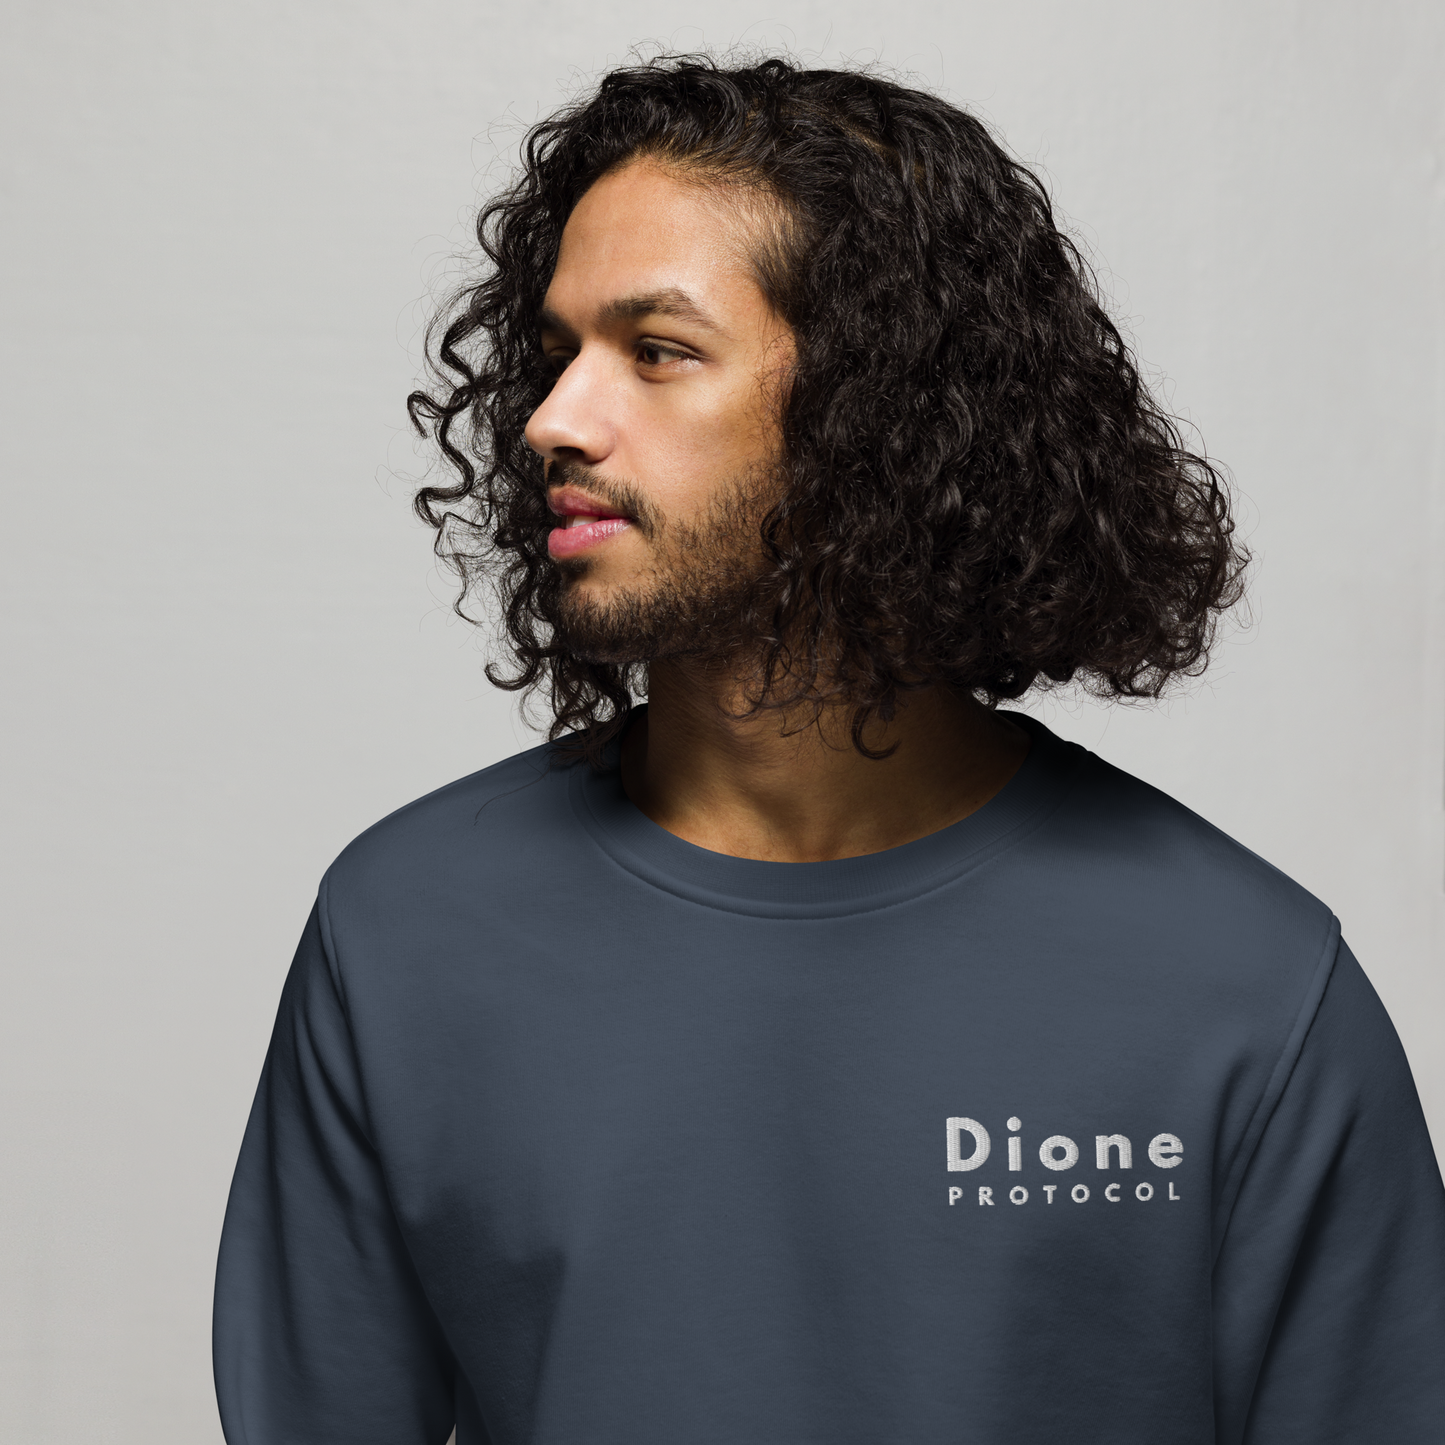 Sweatshirt - Dione V1.0 - Black/ Navy - Standard